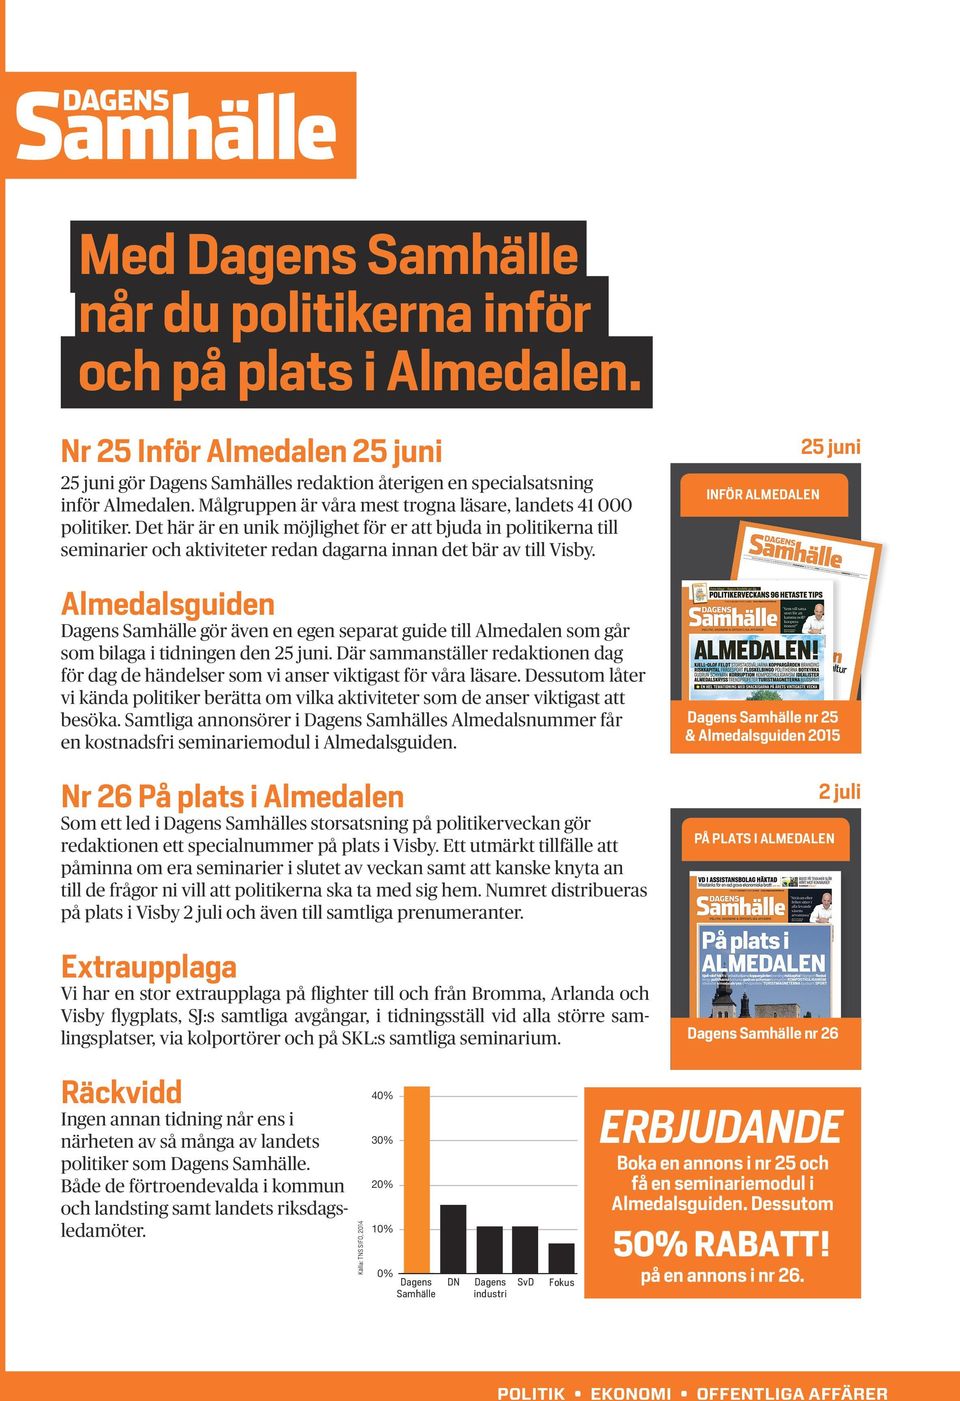 Almedalsguiden Dagens Samhälle gör även en egen separat guide till Almedalen som går som bilaga i tidningen den 25 juni.